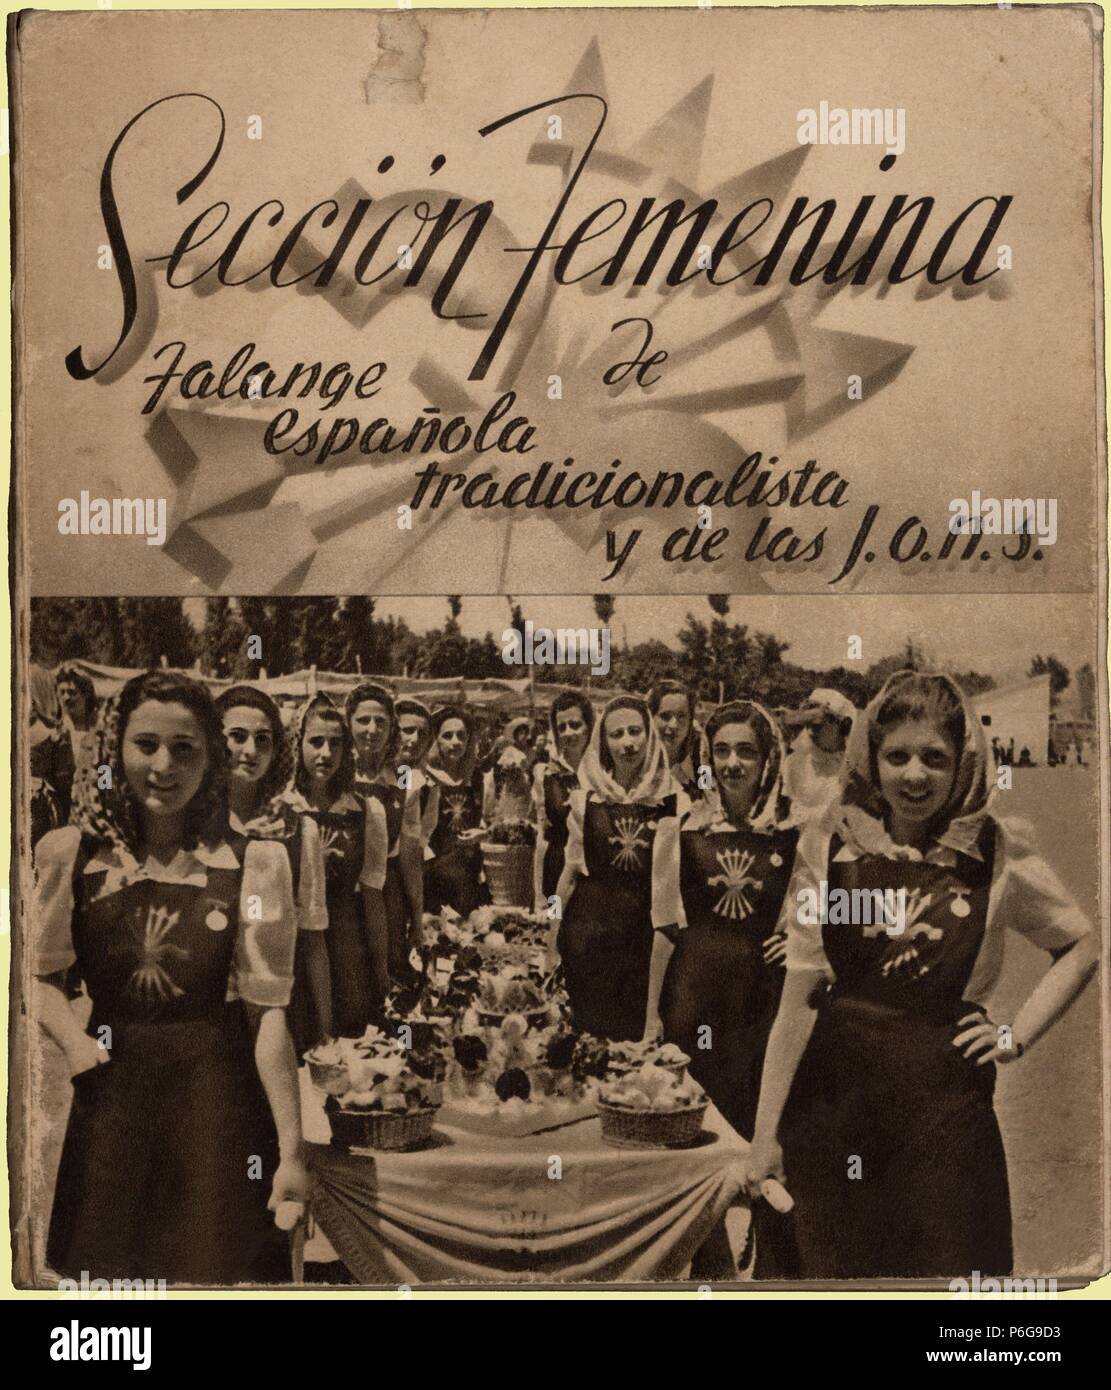 Sección Femenina de Falange Española tradicionalista y de las J.O.N.S. Compendio de artículos y programas. Años 1940. Foto Stock